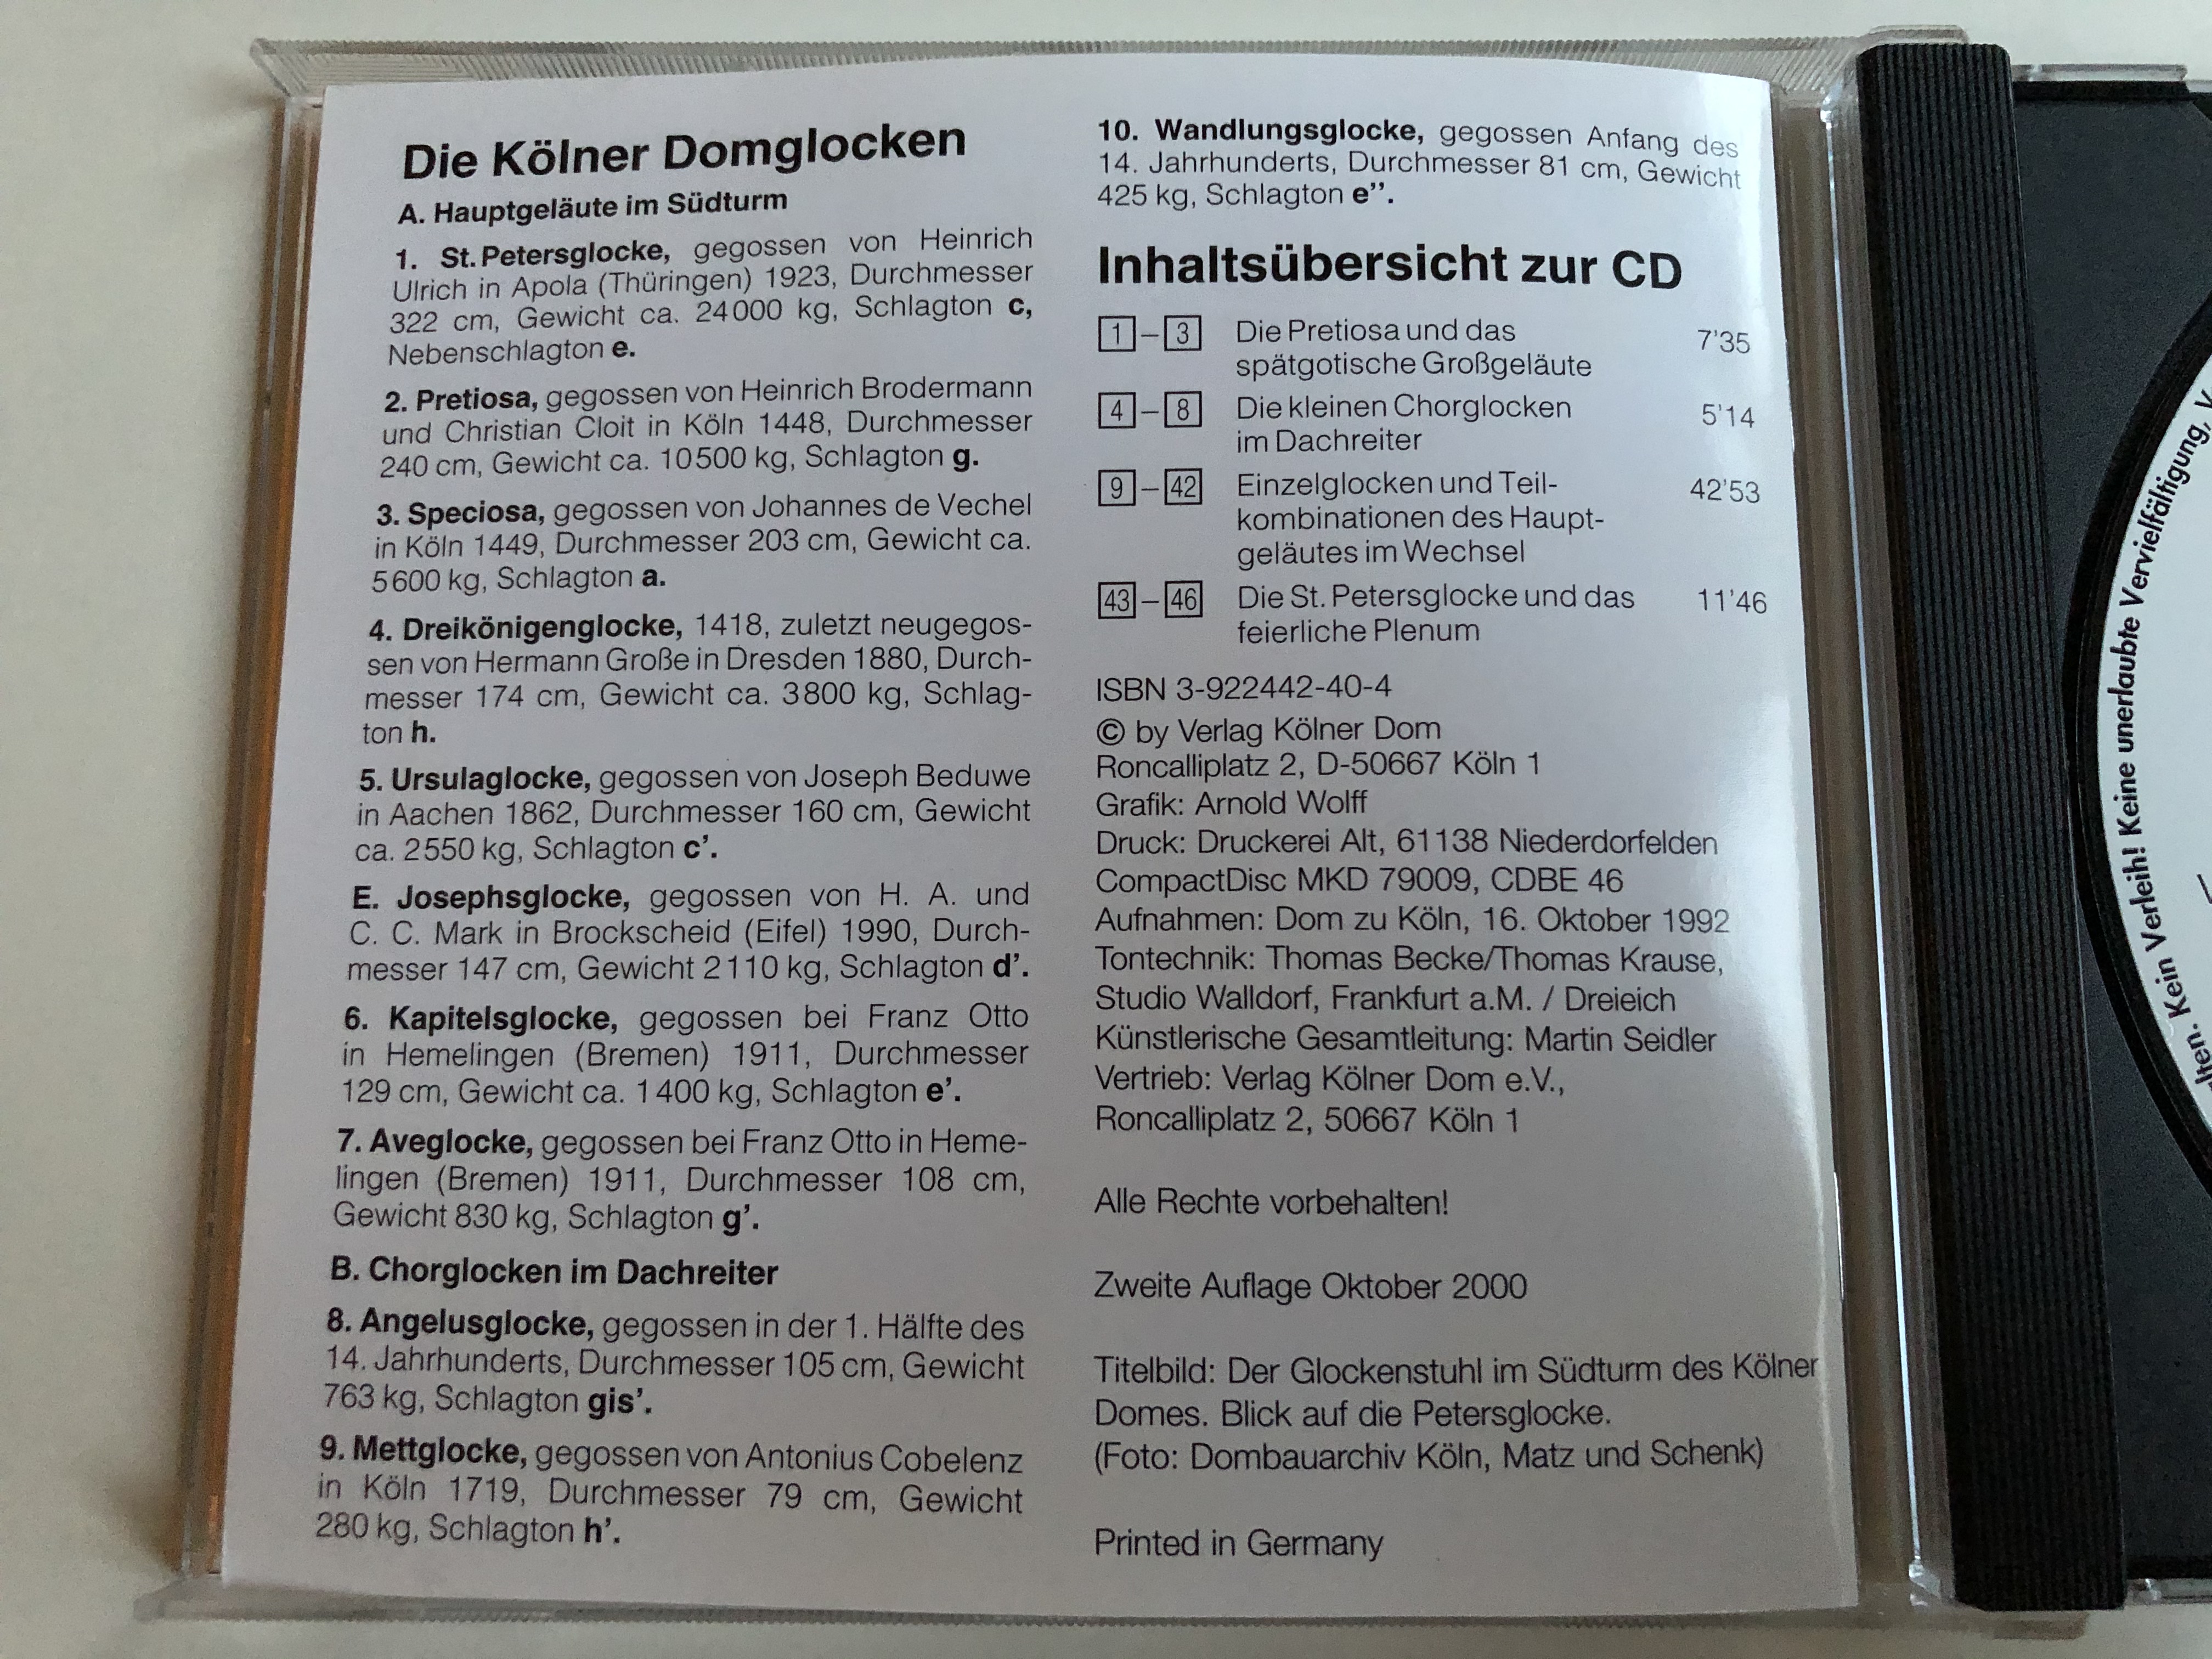 martin-seidler-die-k-lner-domglocken-verlag-k-lner-dom-audio-cd-1992-stereo-mkd-79009-17-.jpg